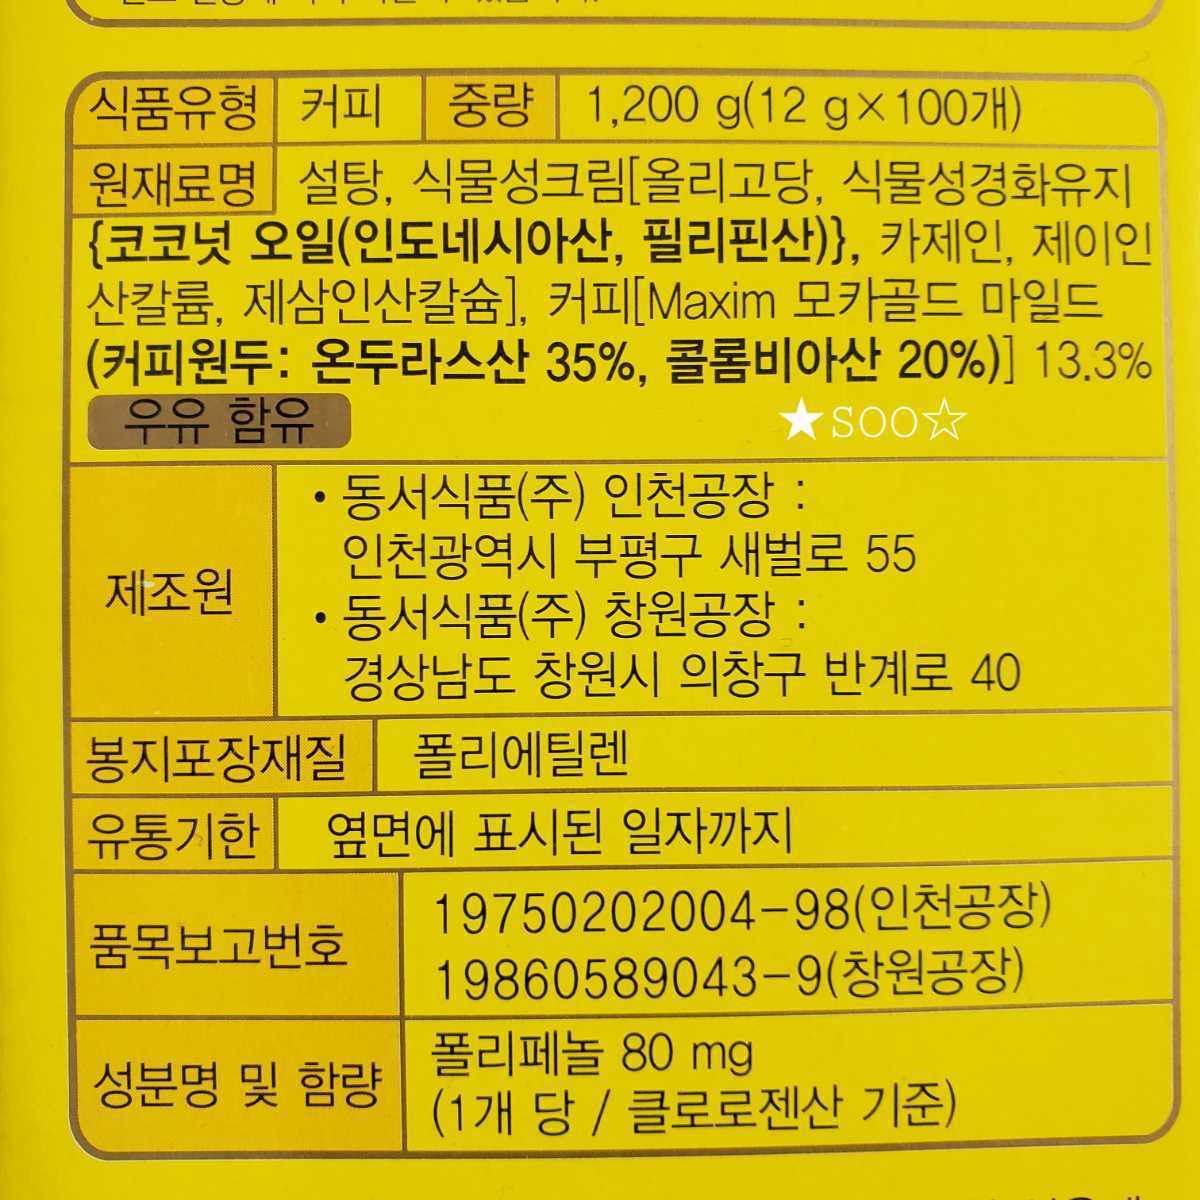 『モカゴールドマイルド』韓国 マキシム maxim インスタントコーヒー 30本